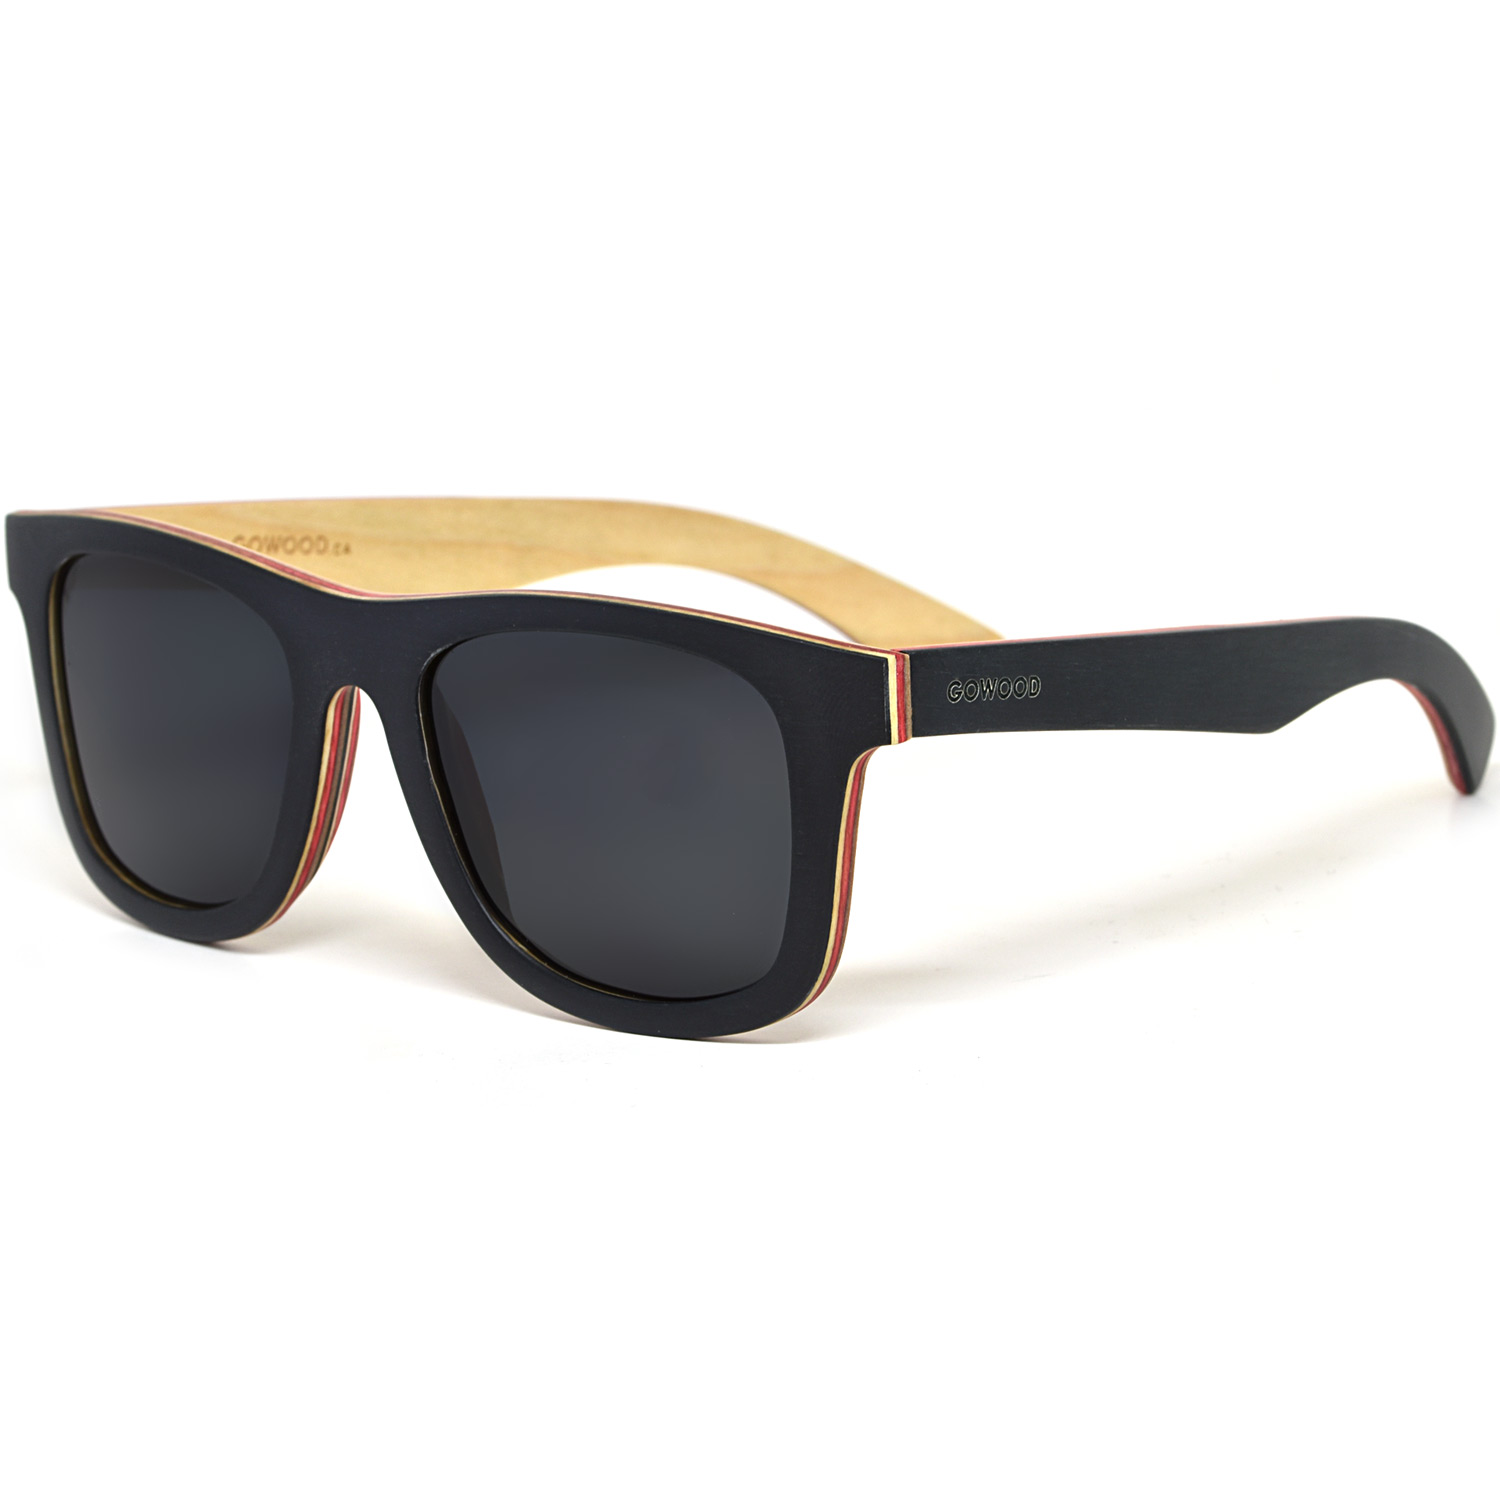 Black maple wood sunglasses